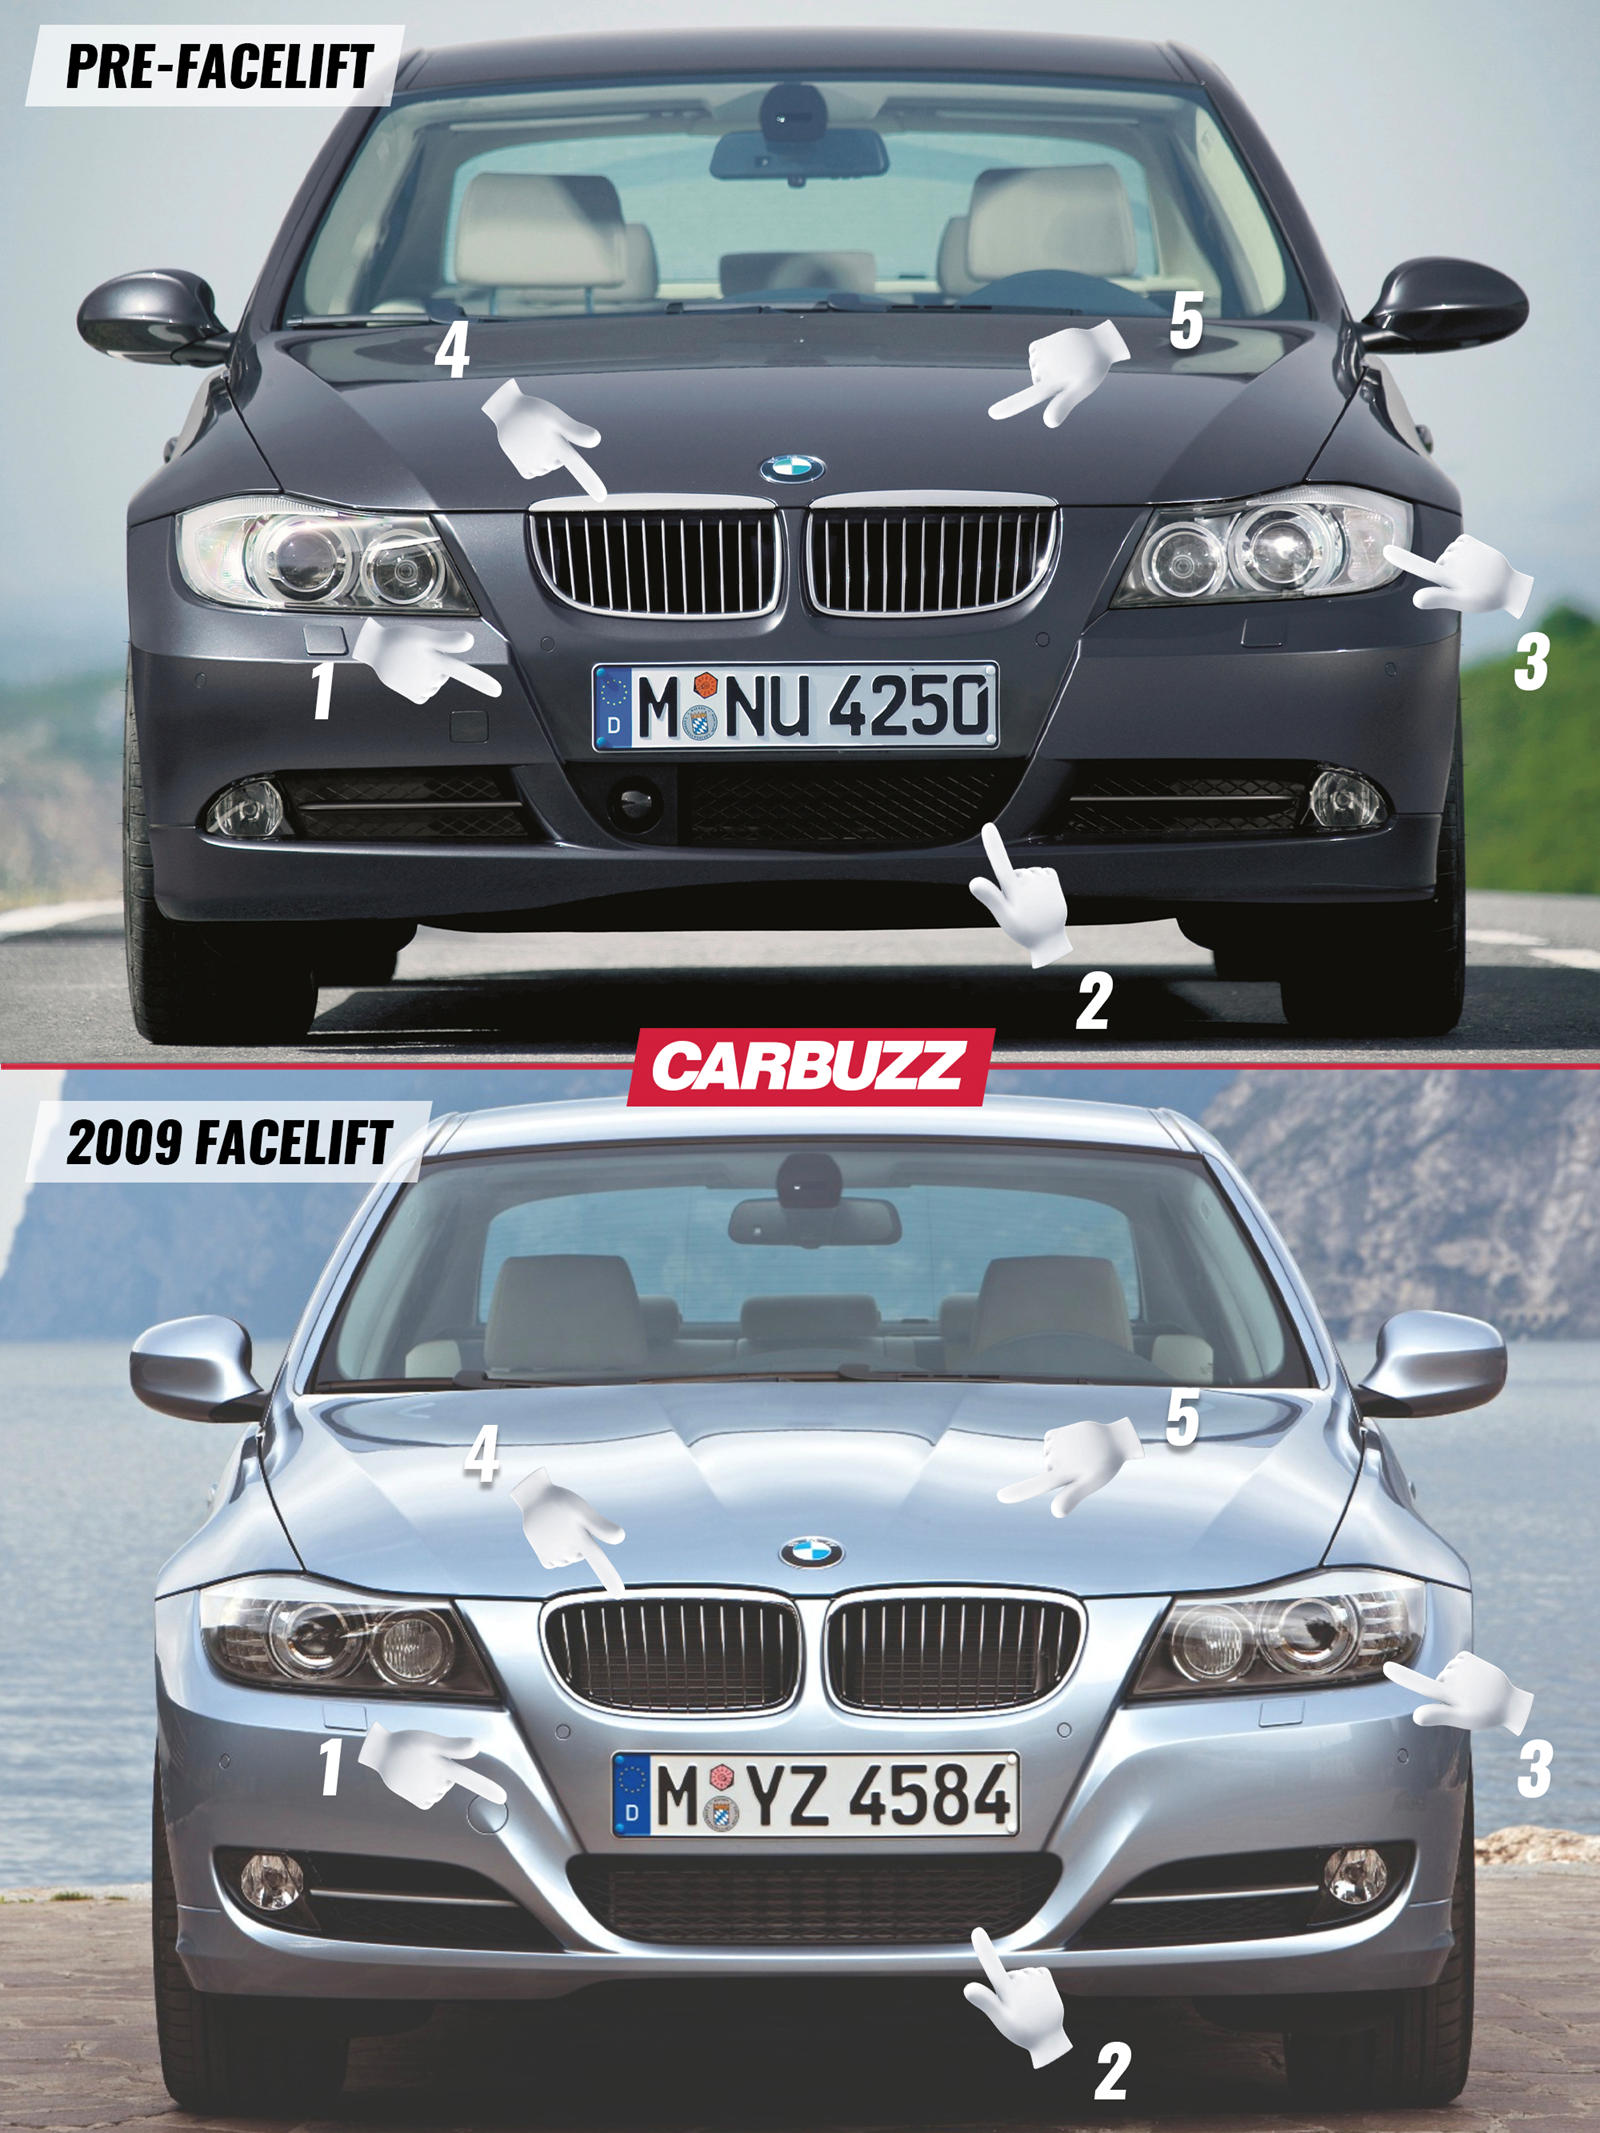 BMW 3 Series Cabrio (E93) Photos and Specs. Photo: BMW 3 Series Cabrio (E93)  specs and 26 perfect photos …